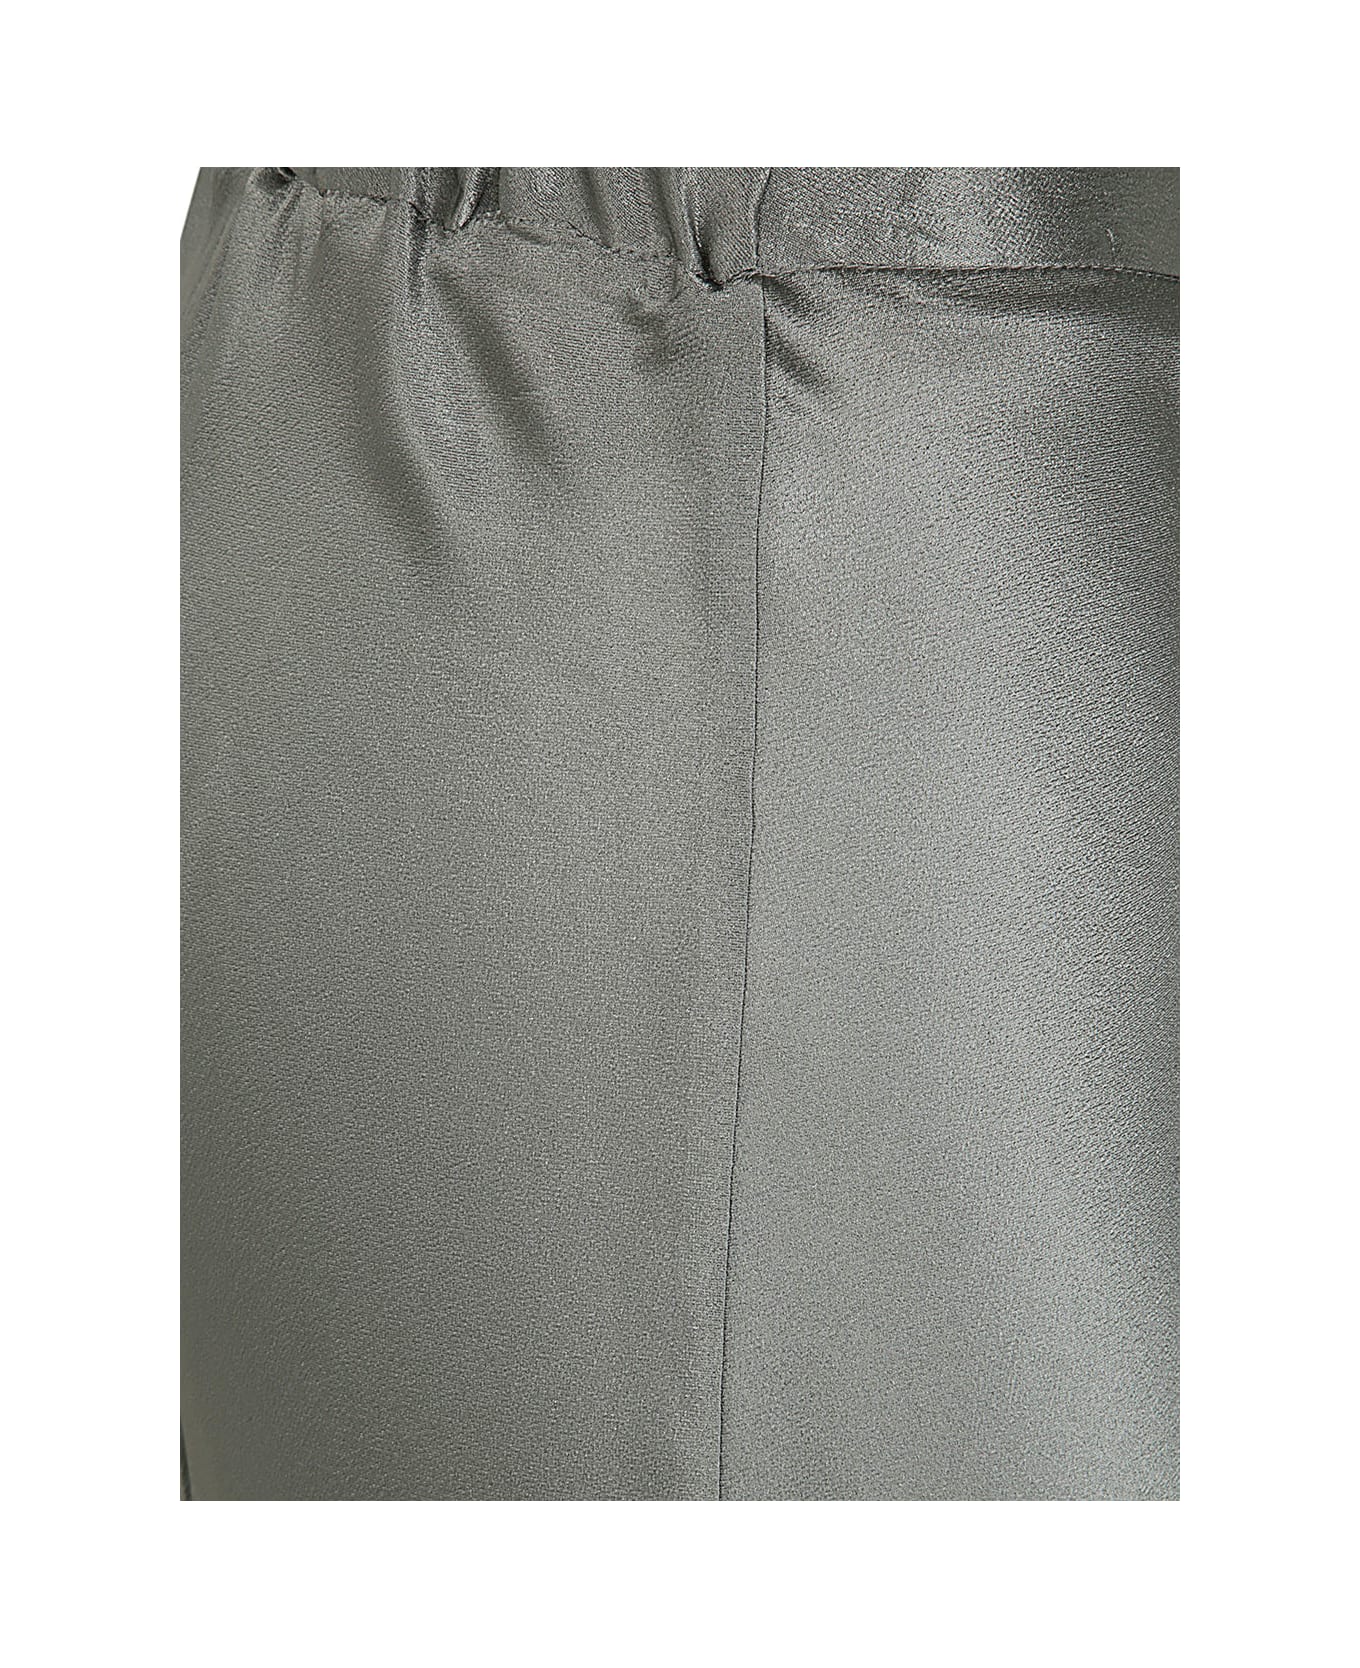 Antonelli Kuk Longuette Skirt - Grey